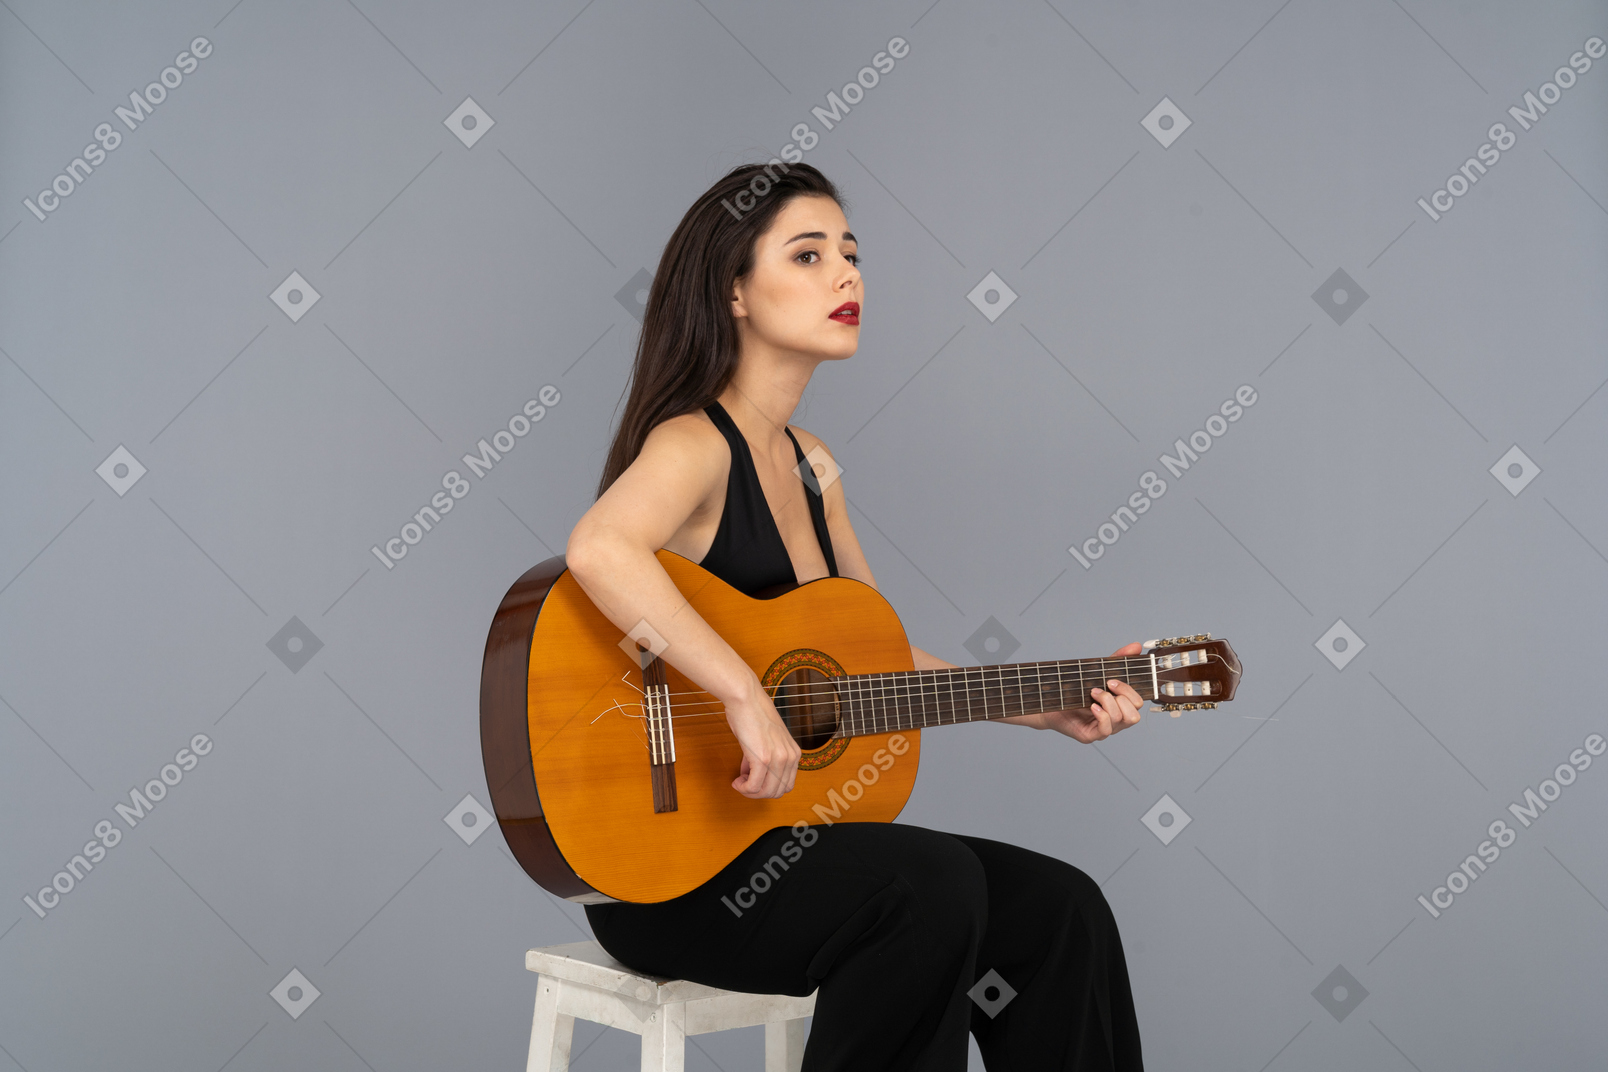 ギターを持って黒いスーツを着て座っている若い女性の4分の3のビュー